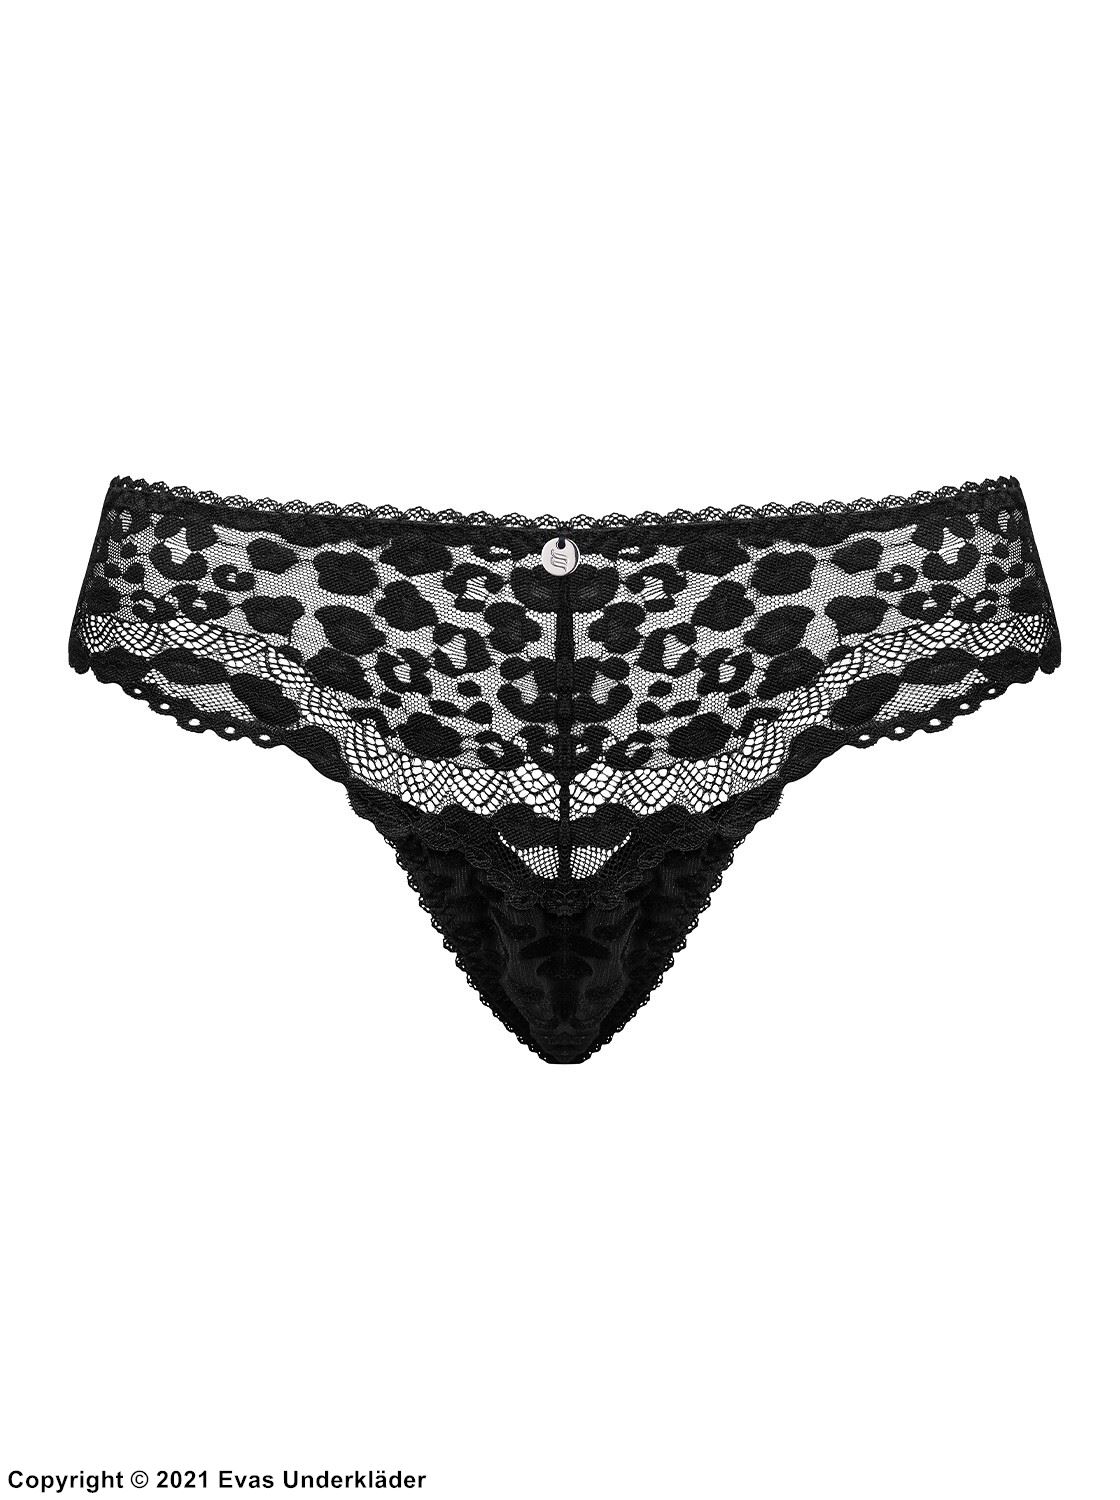 Thong, lace, velvet, leopard